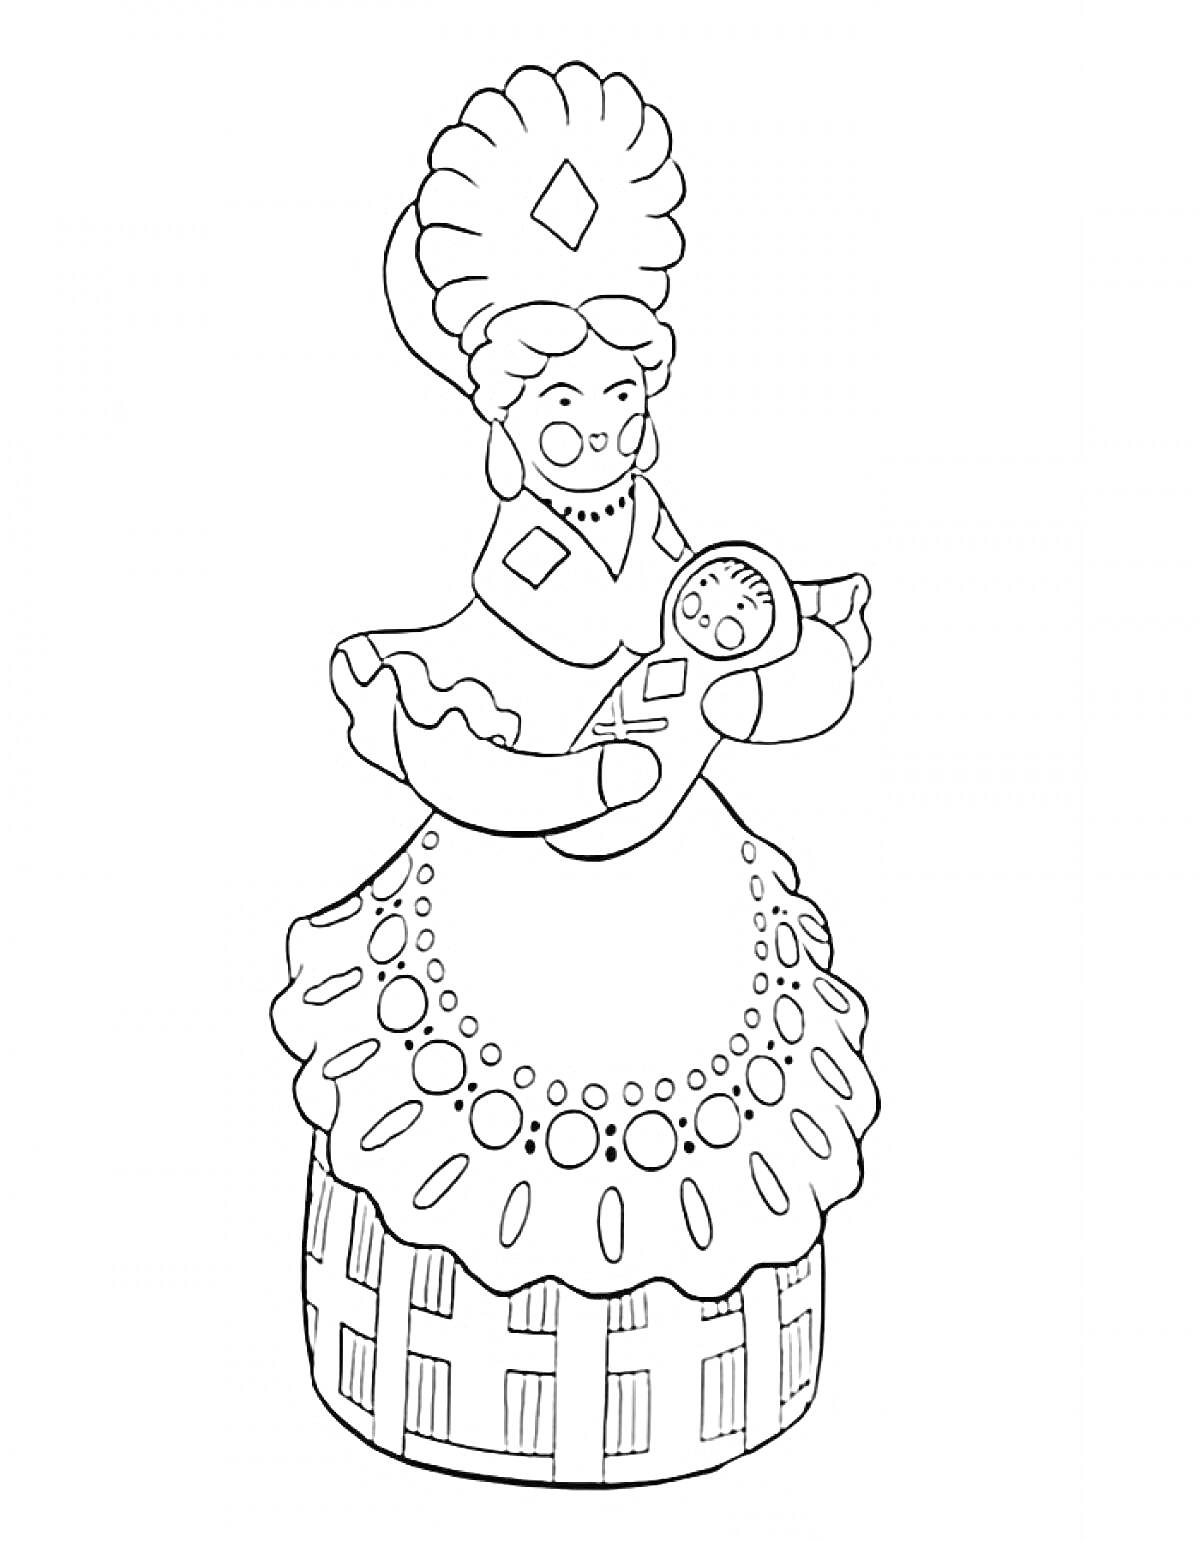 Дымковская барышня с младенцем в руках, в головном уборе и платье с узорами